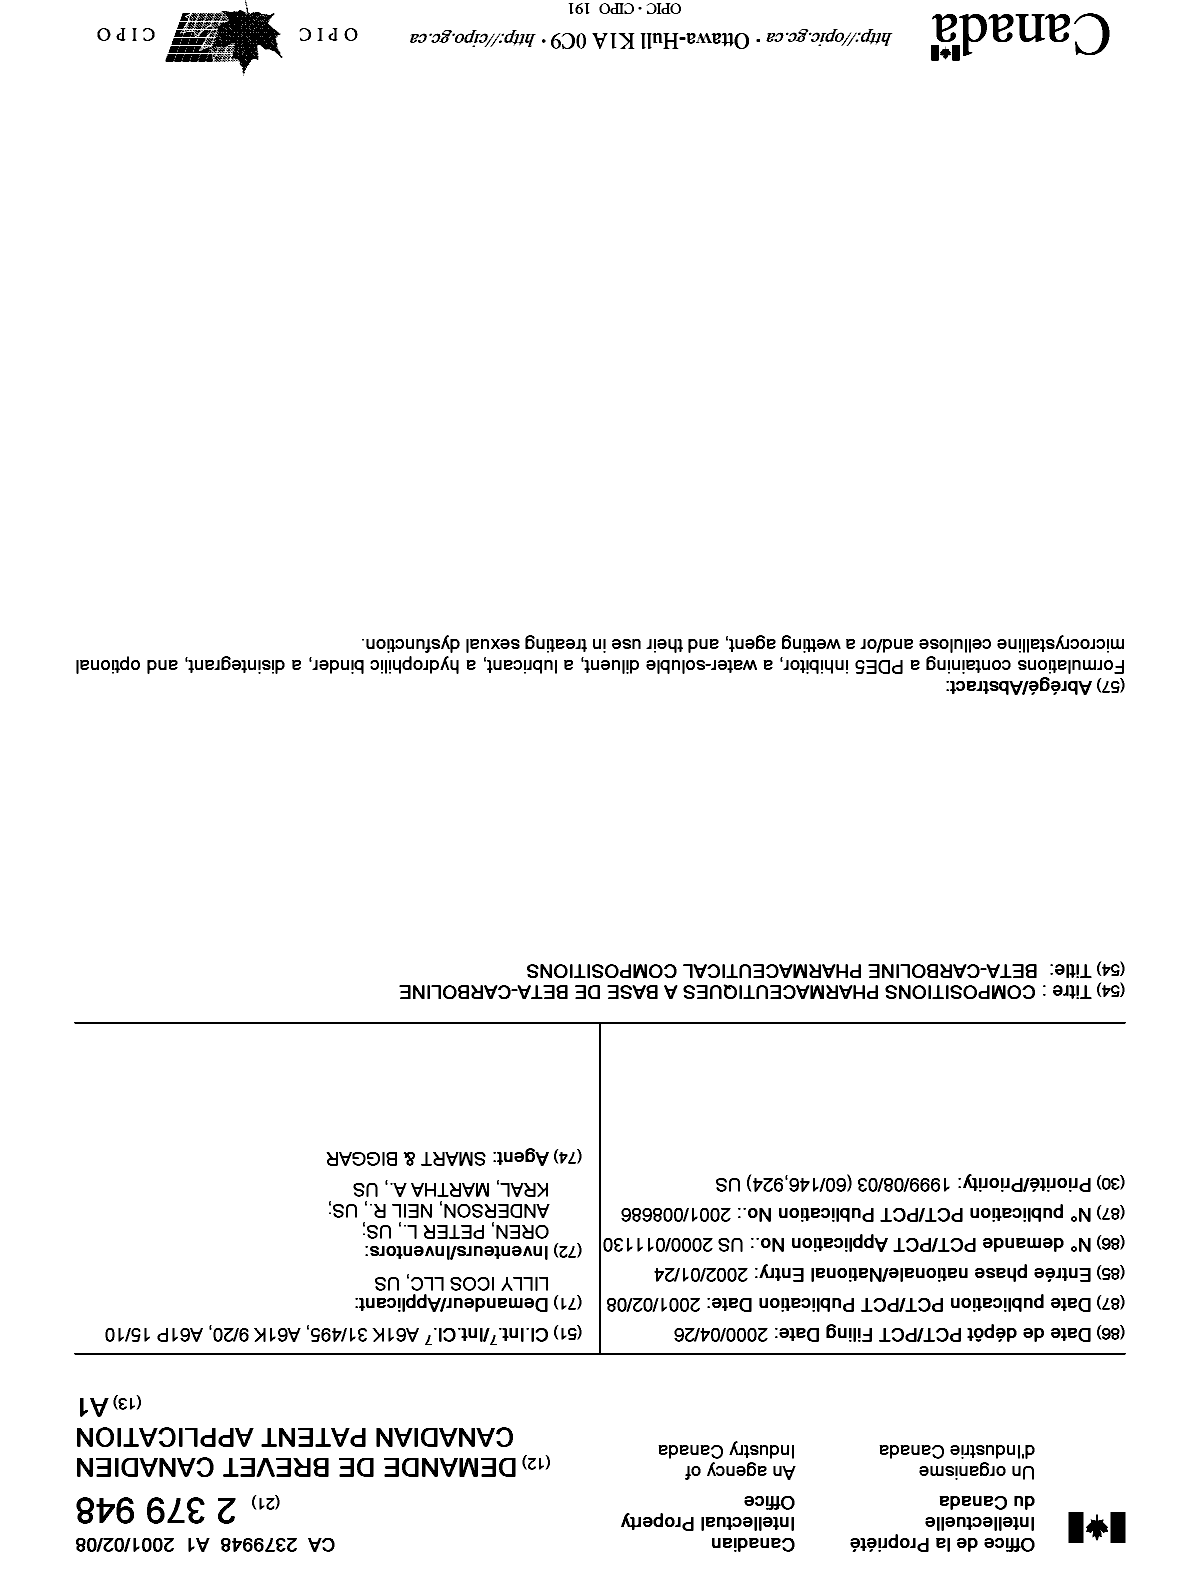 Document de brevet canadien 2379948. Page couverture 20011224. Image 1 de 1